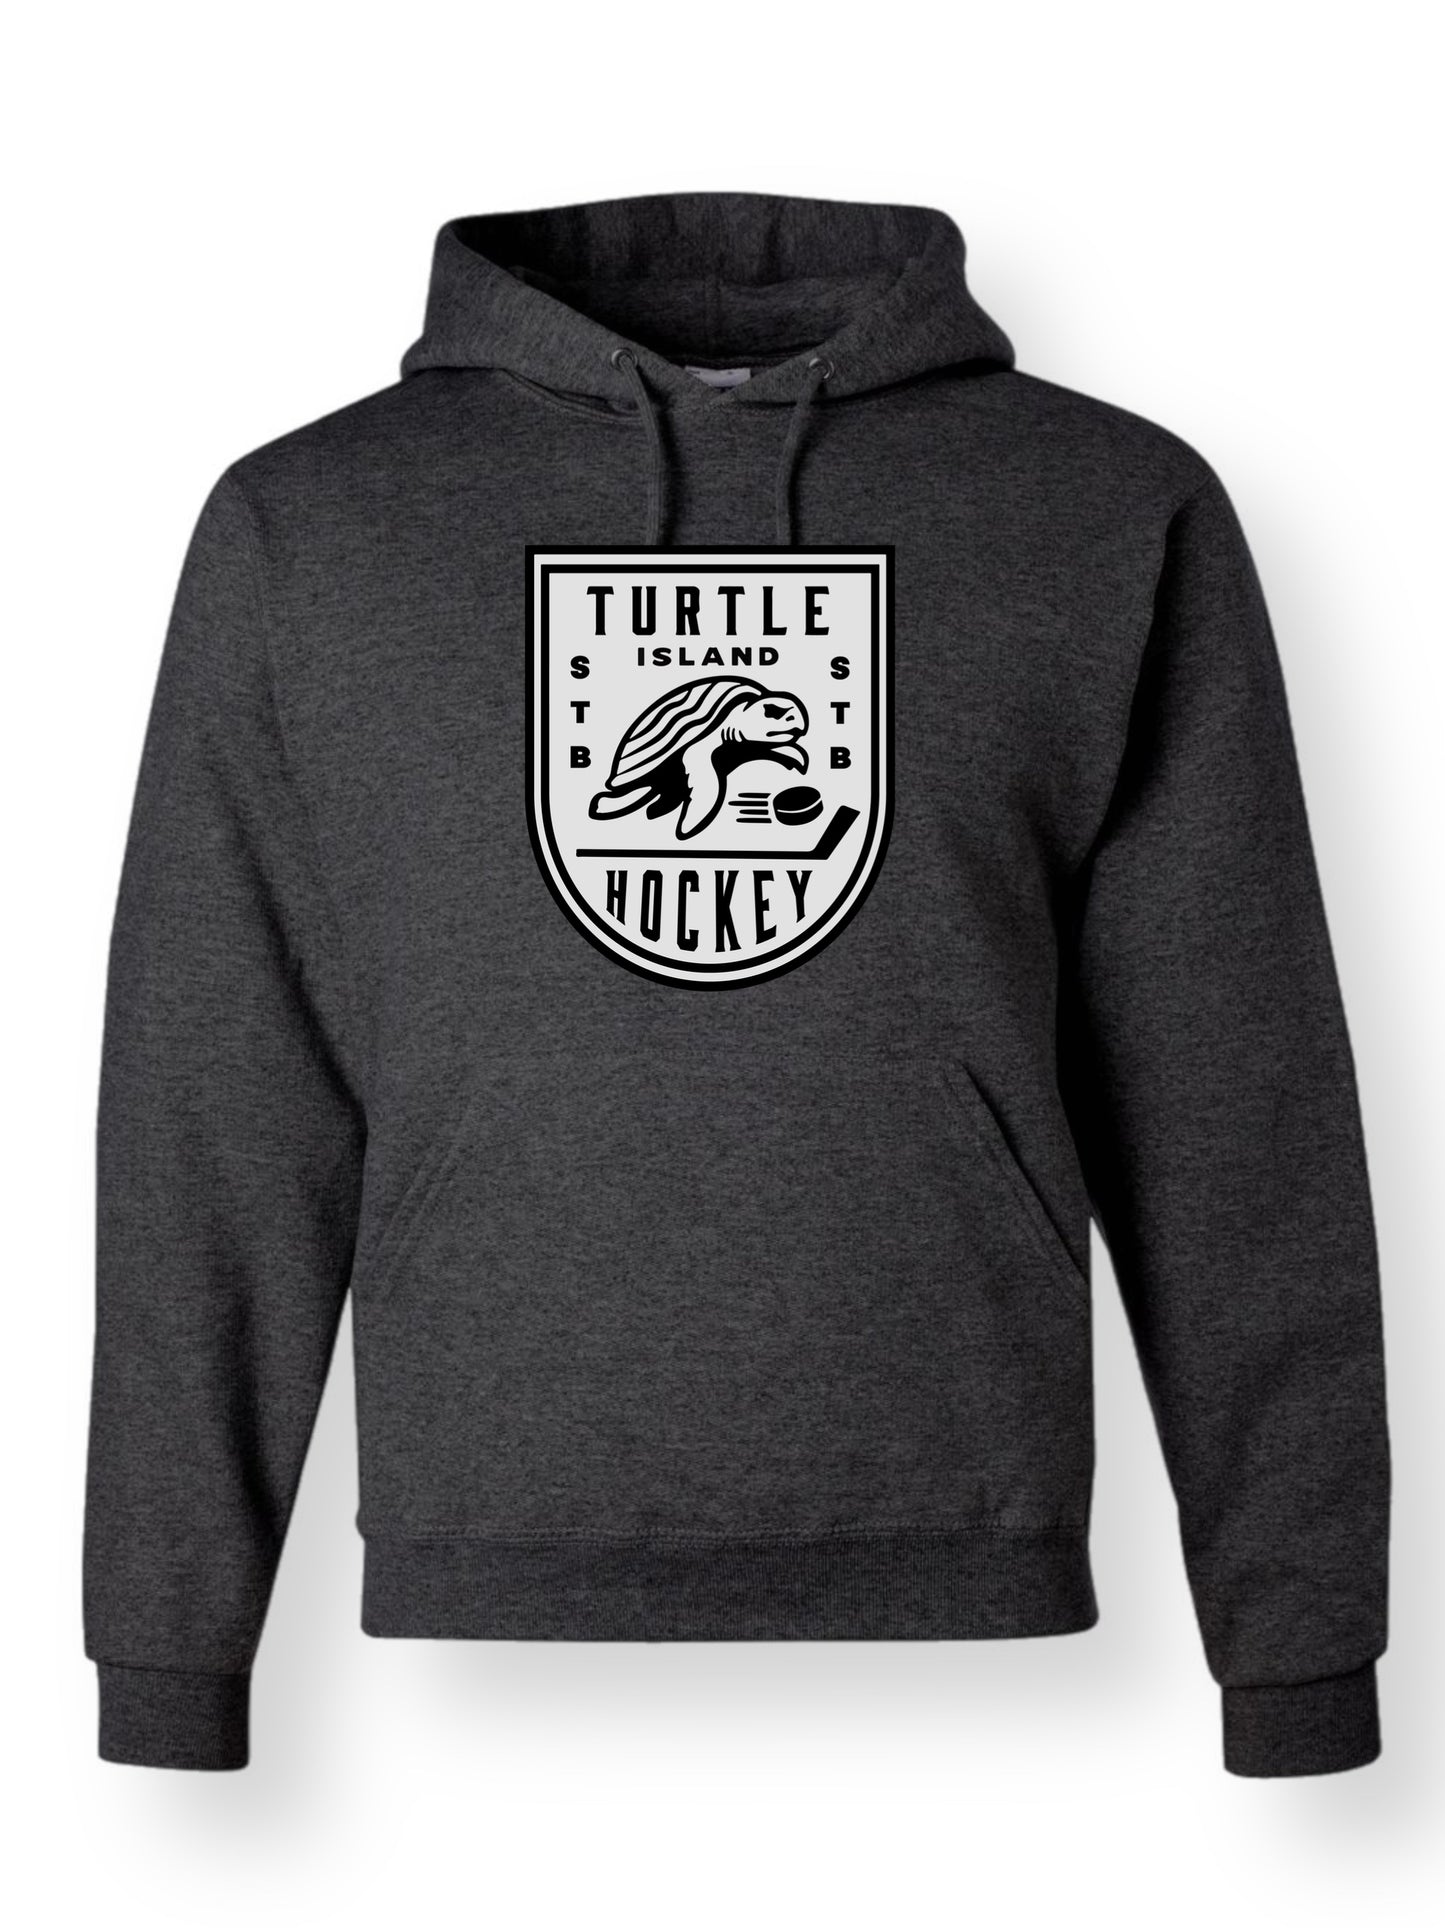 Turtle Island Hockey Hoodie- Dark Grey